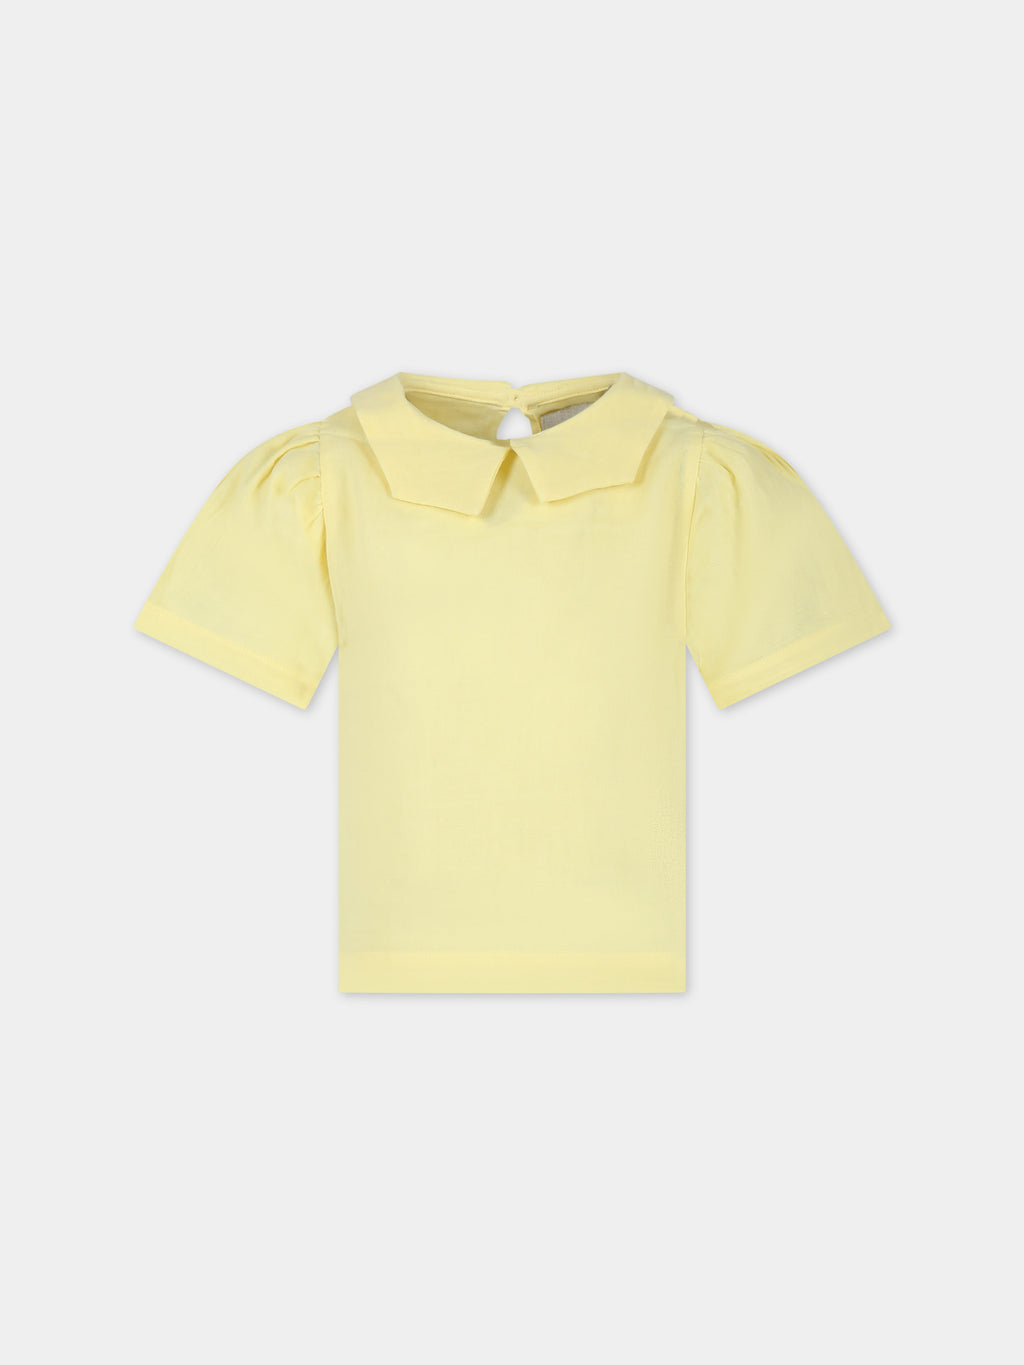 Yellow shirt for girl